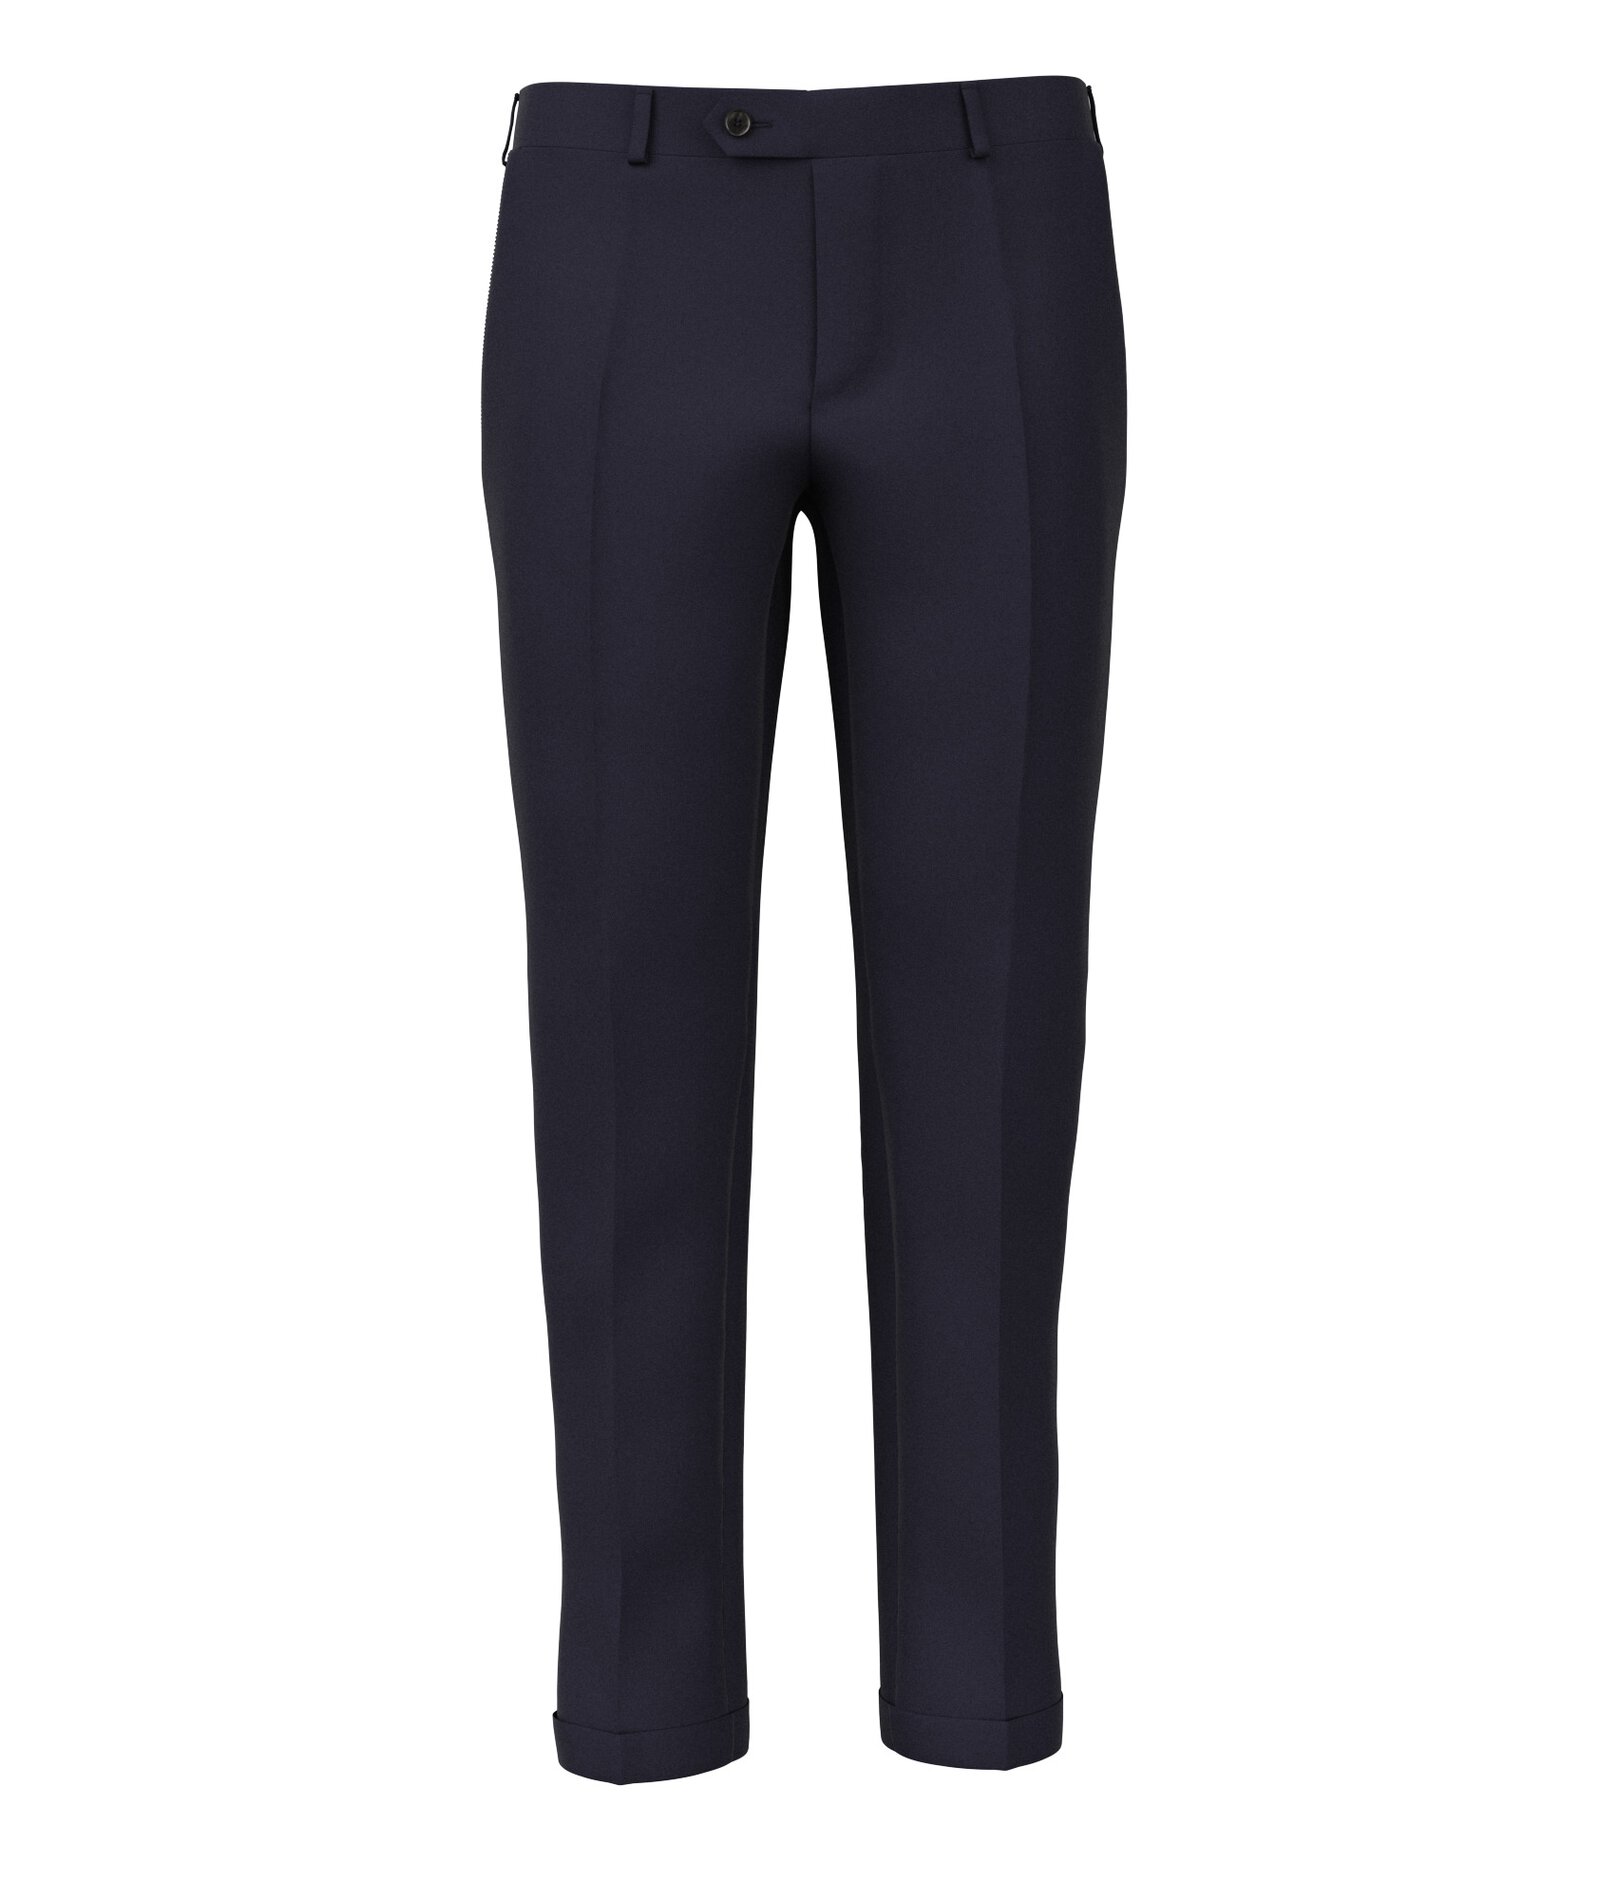 Image of Pantaloni da uomo su misura, Reda, Tinta Unita Blu 100% Lana Merino, Quattro Stagioni | Lanieri